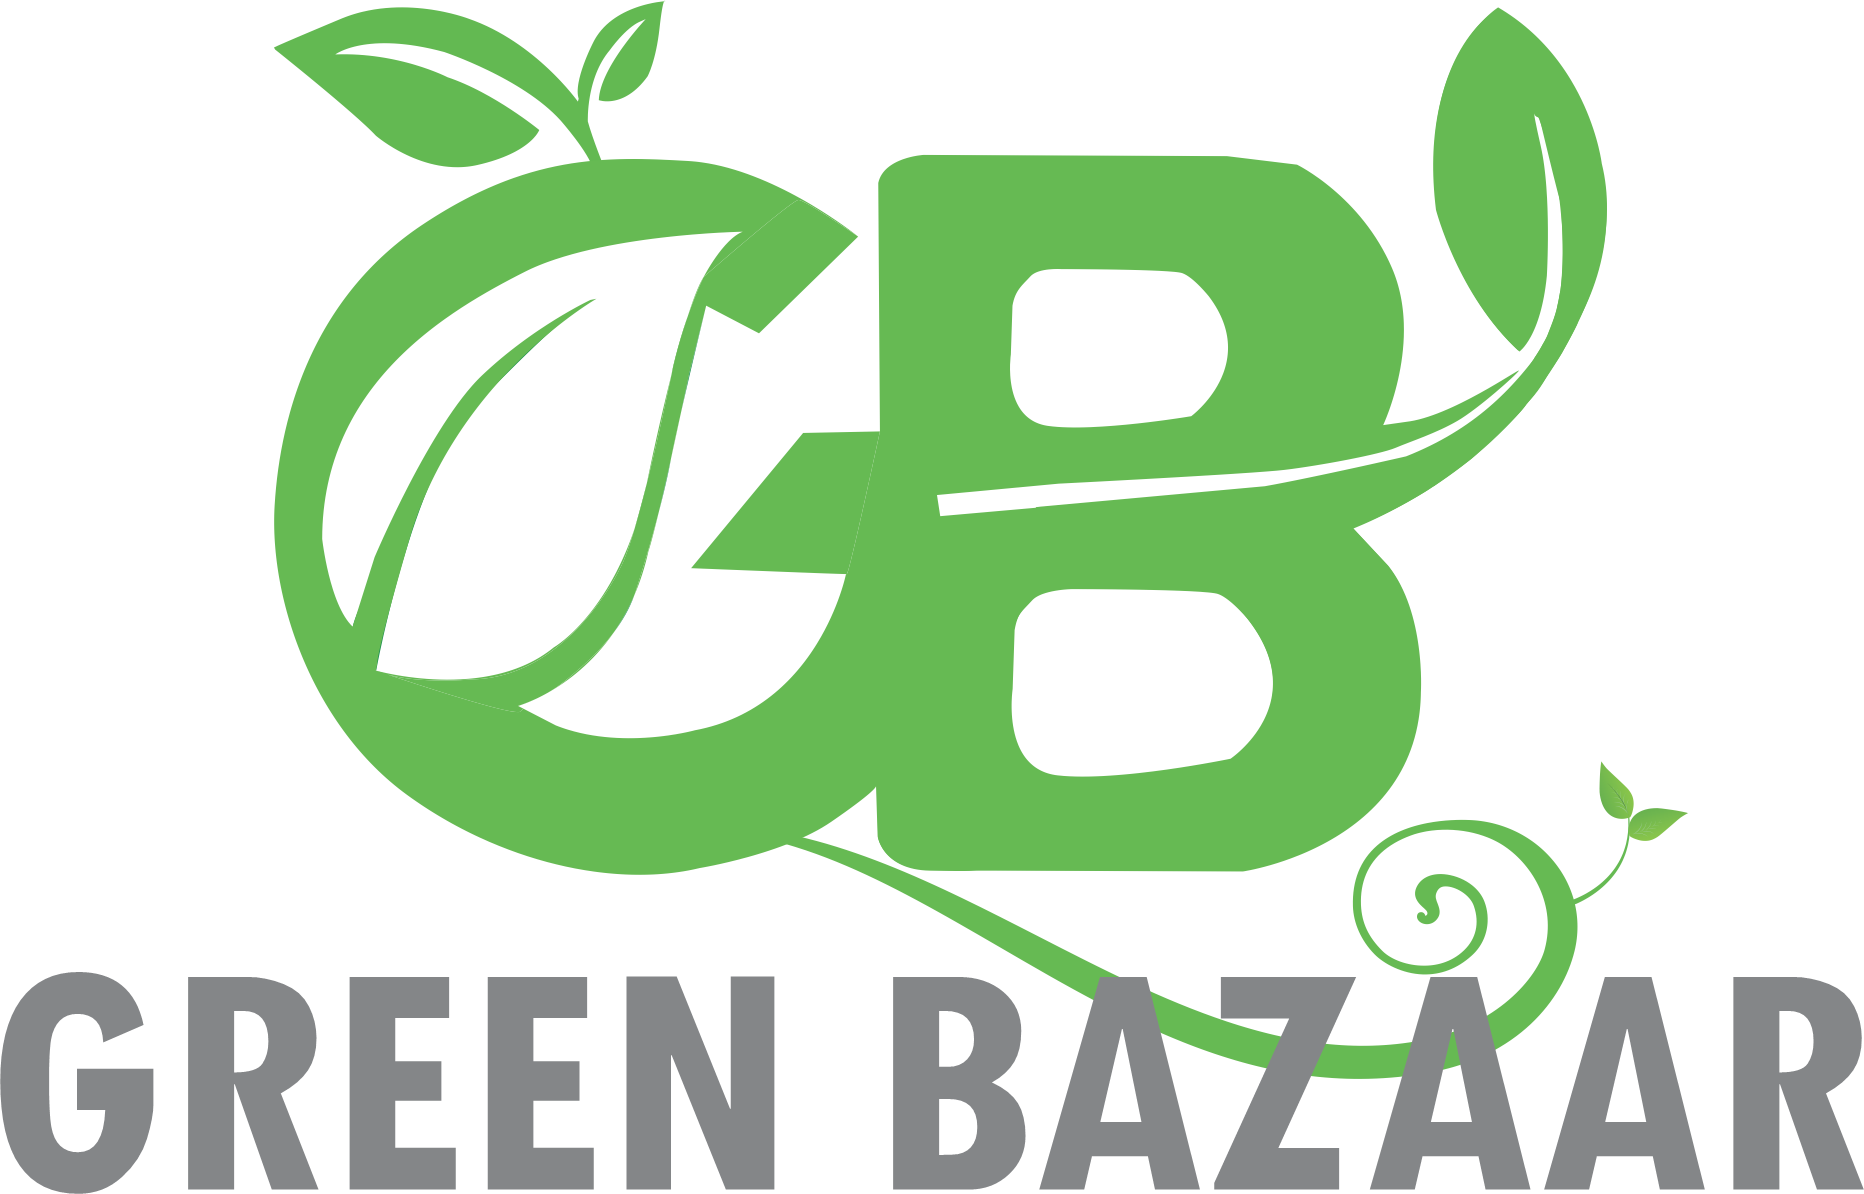 Green Bazaar